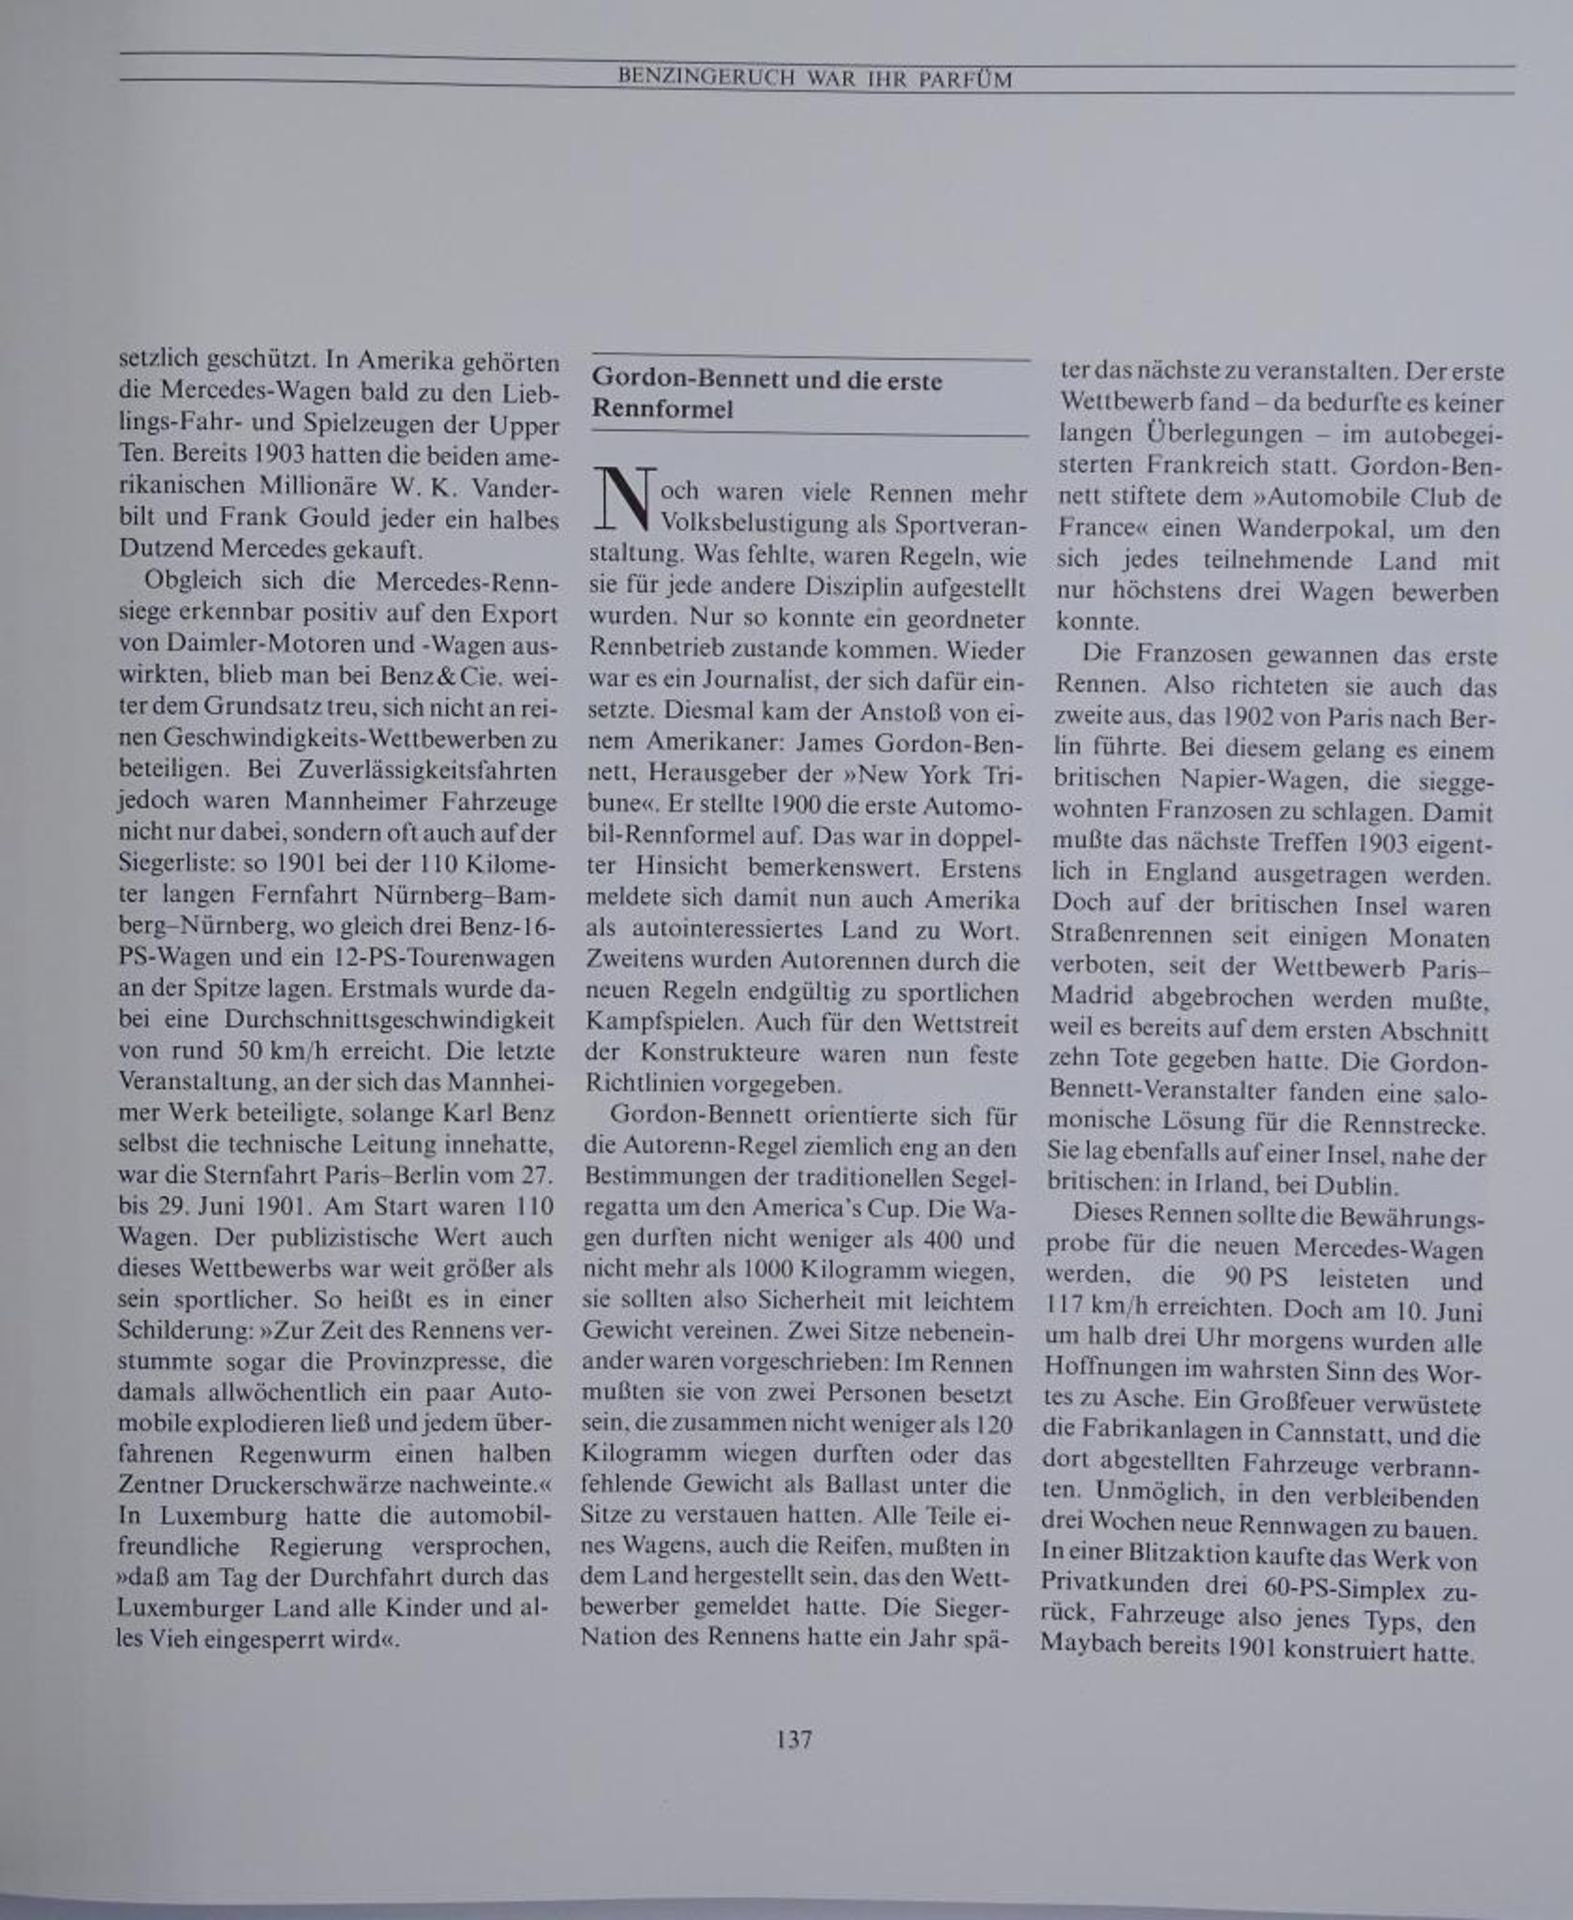 100 Jahre Daimler-Bezn, Zwei Bände, "Die Technik und das Unternehmen", 1986,im Schube - Bild 5 aus 10